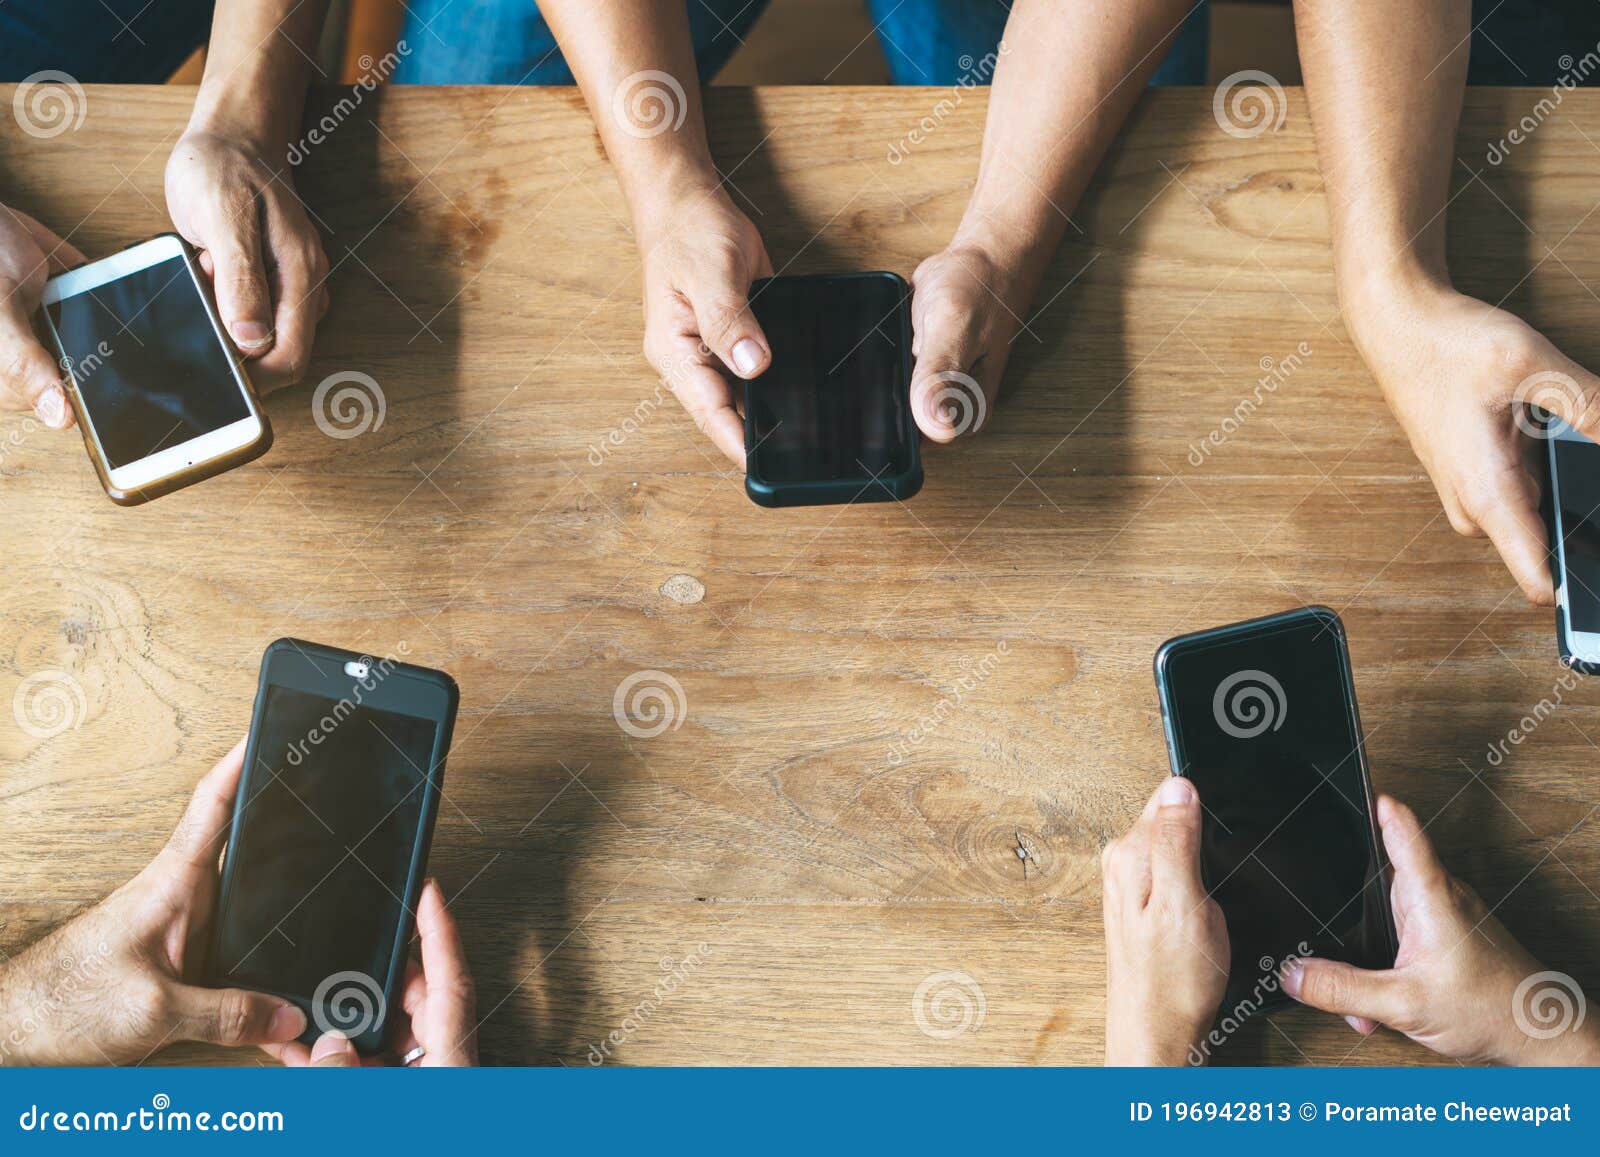 Amigos jogando jogos para celular em seu celular conceito de